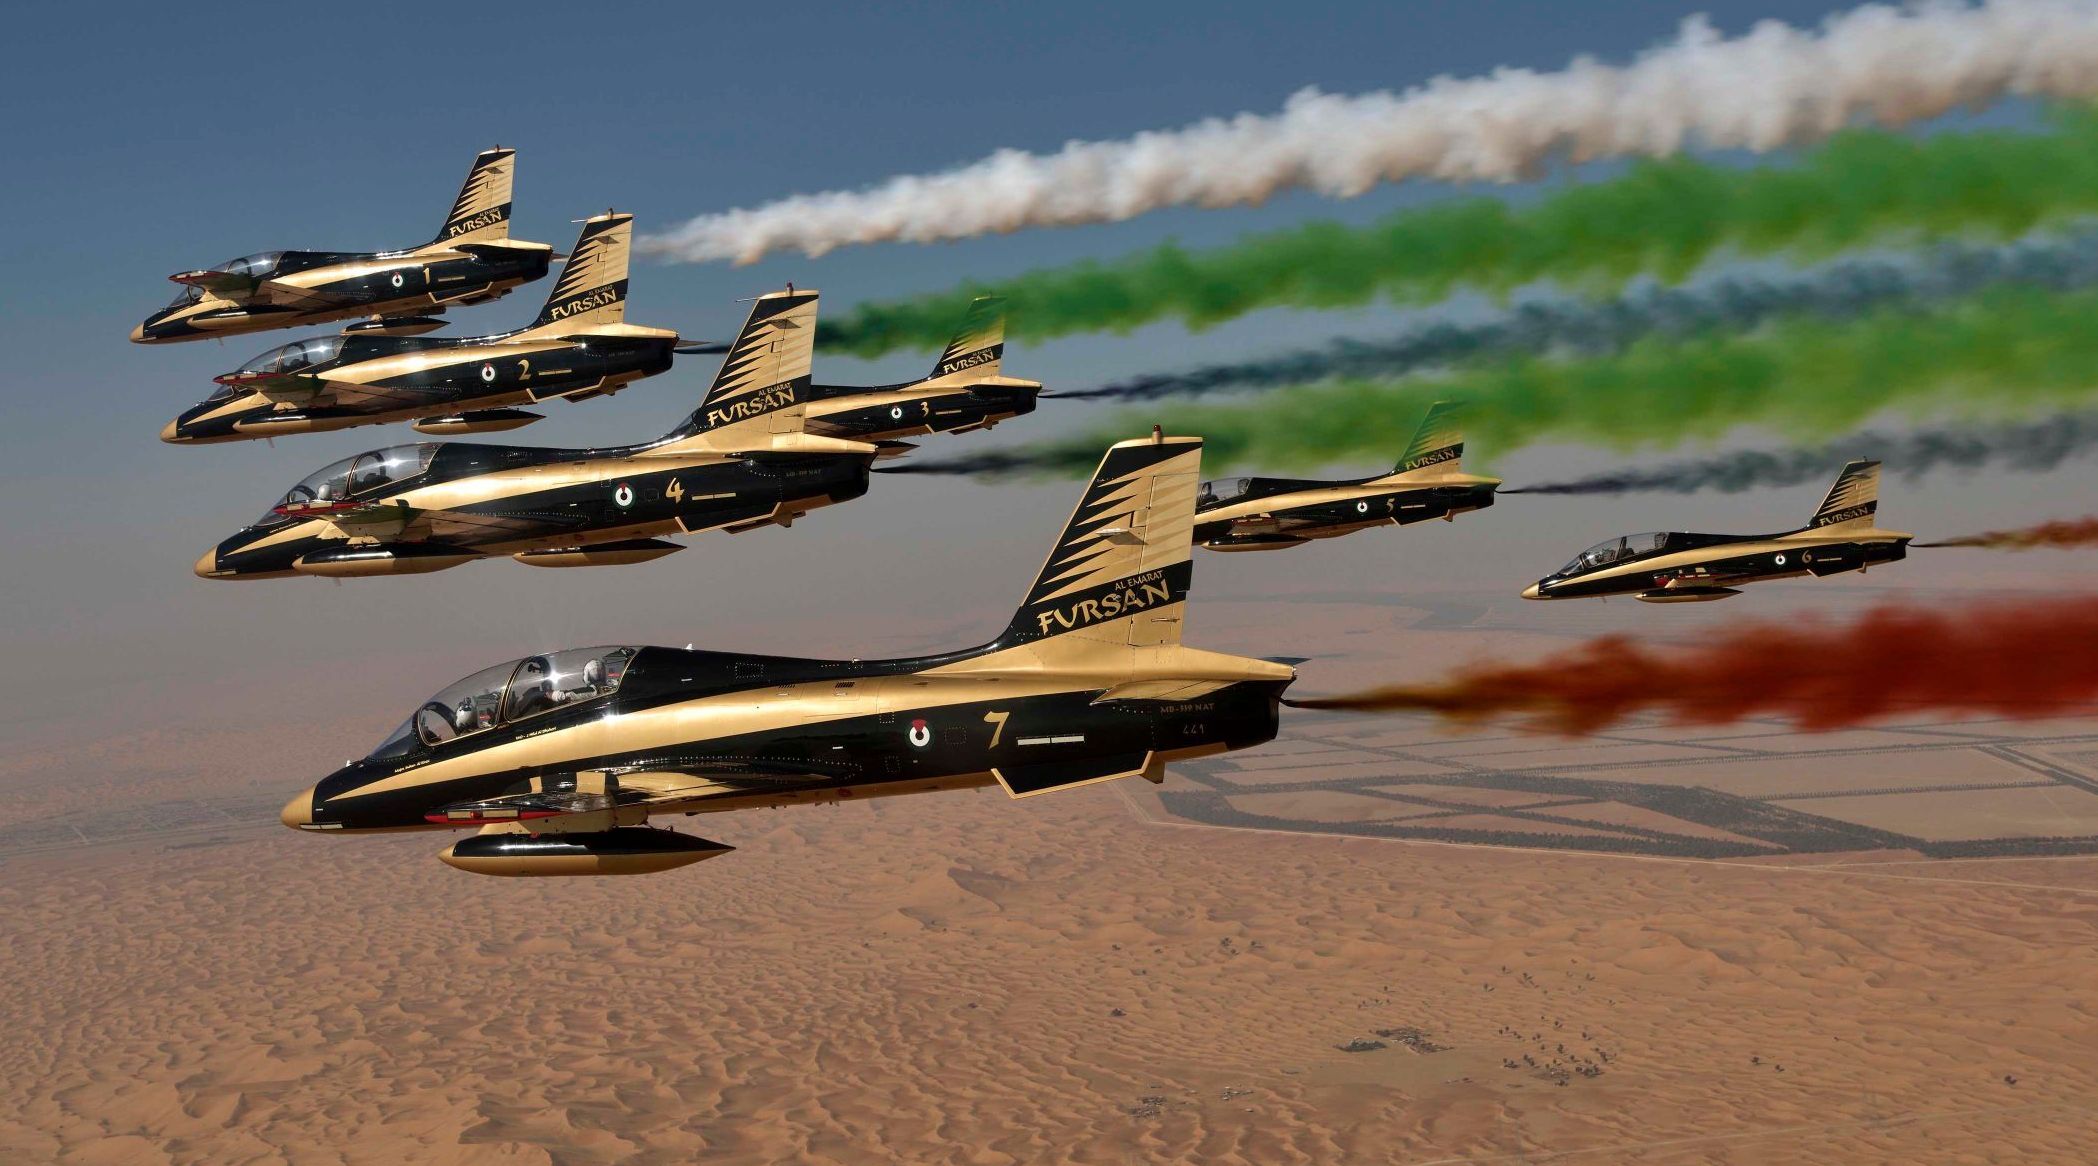 اماراتی فضائیہ کی الفرسان اتوار سے میڈیکل ٹیموں کے اعزاز میں امارات کے اسپتالوں میں پرواز کرے گی